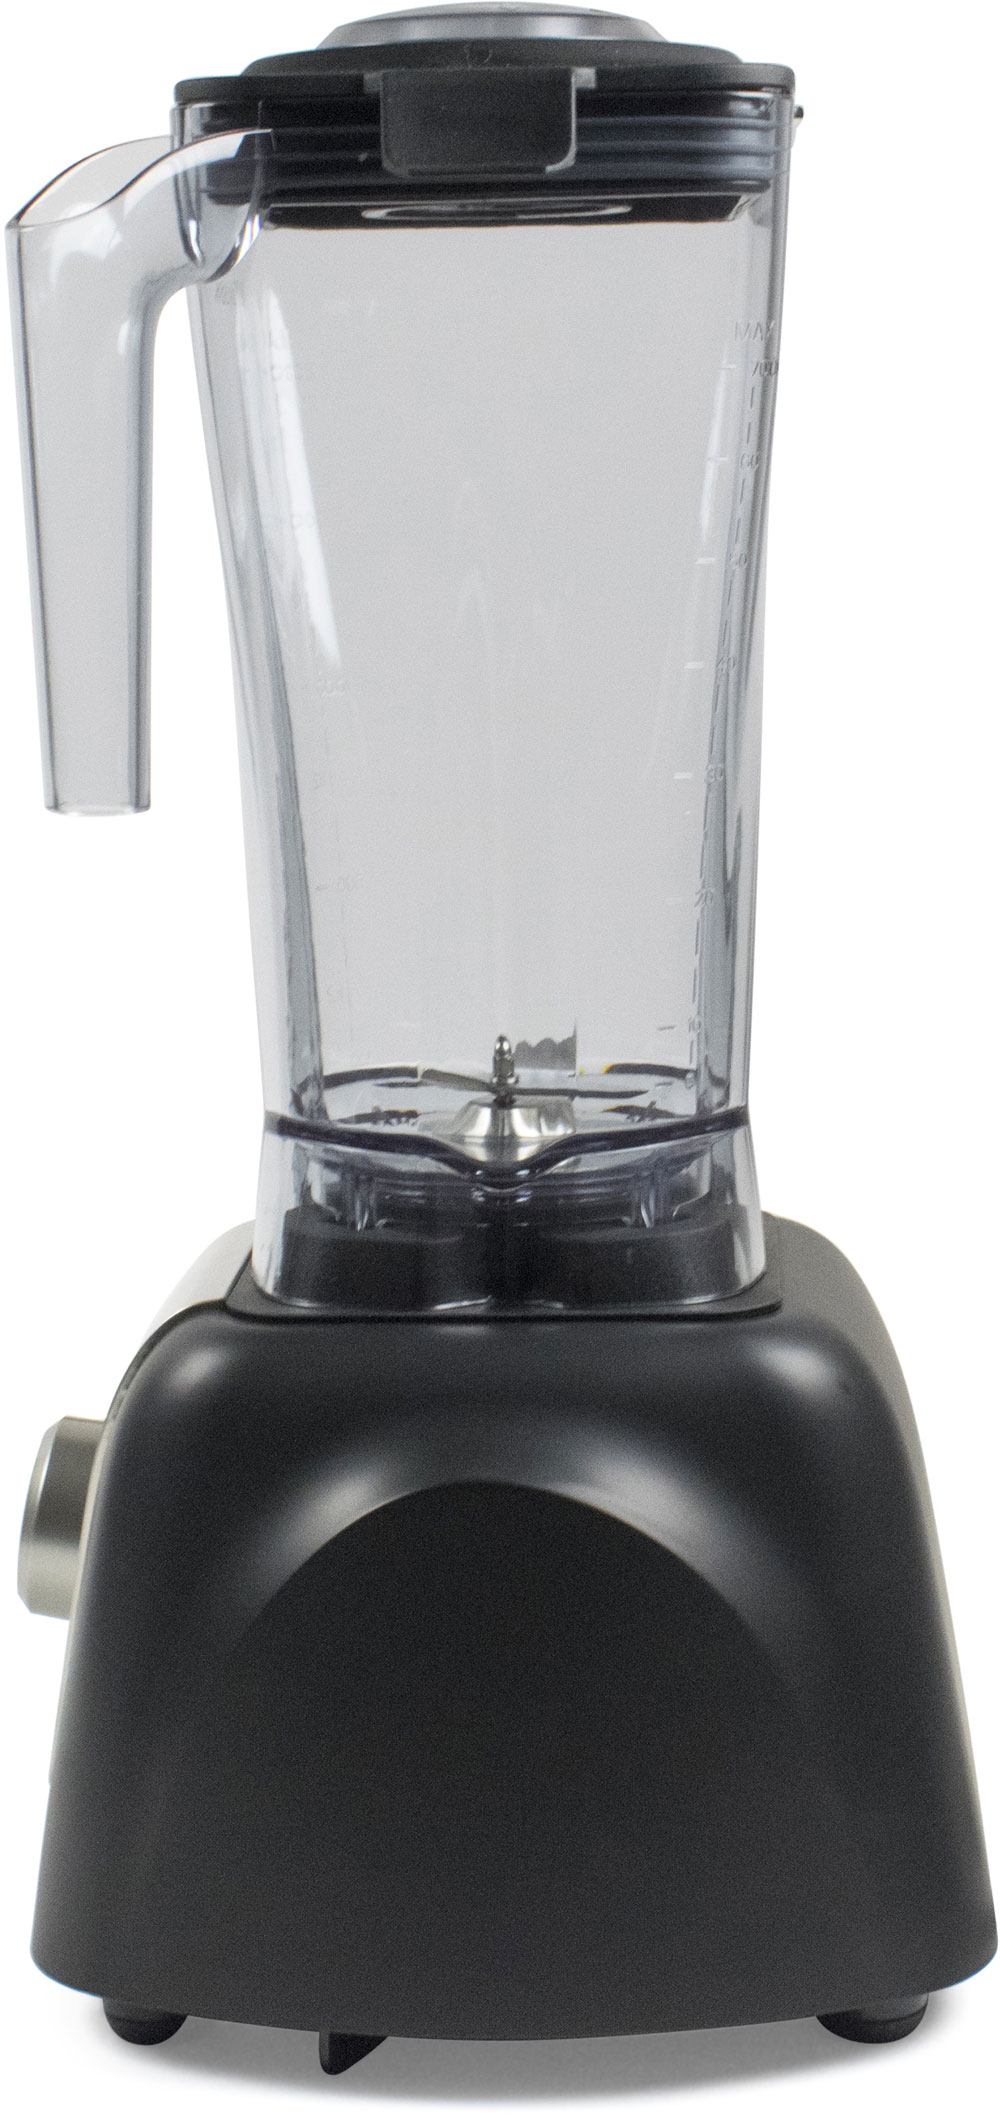 Wartmann High Speed Blender WM-1807 HS (2 liter Tritan jug) (Black)